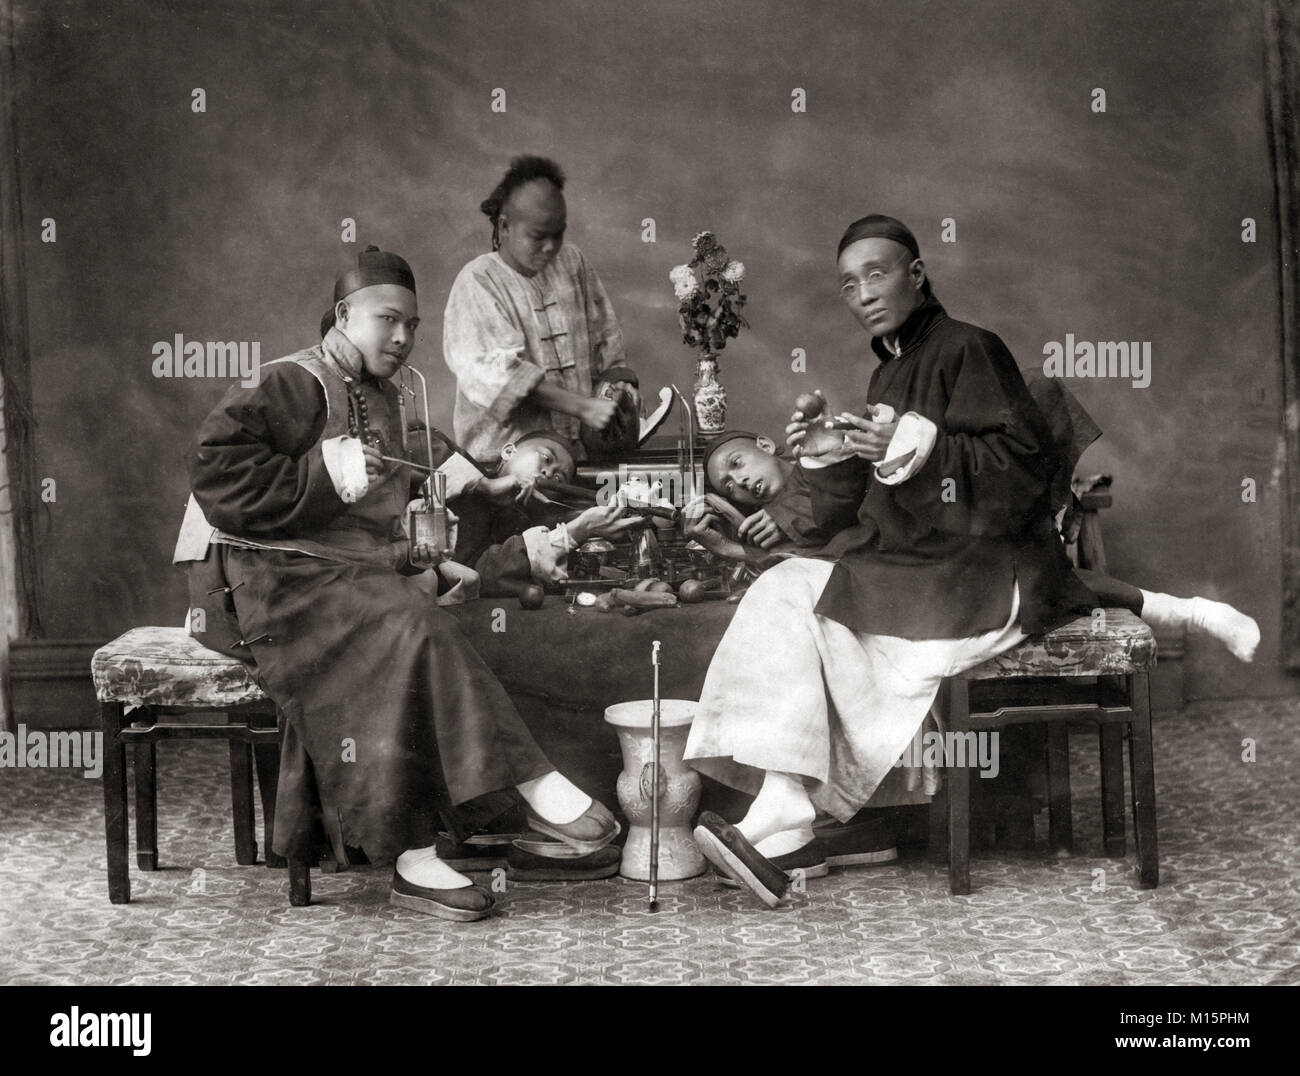 Chinese men smoking opium, China, c.1880's Stock Photo